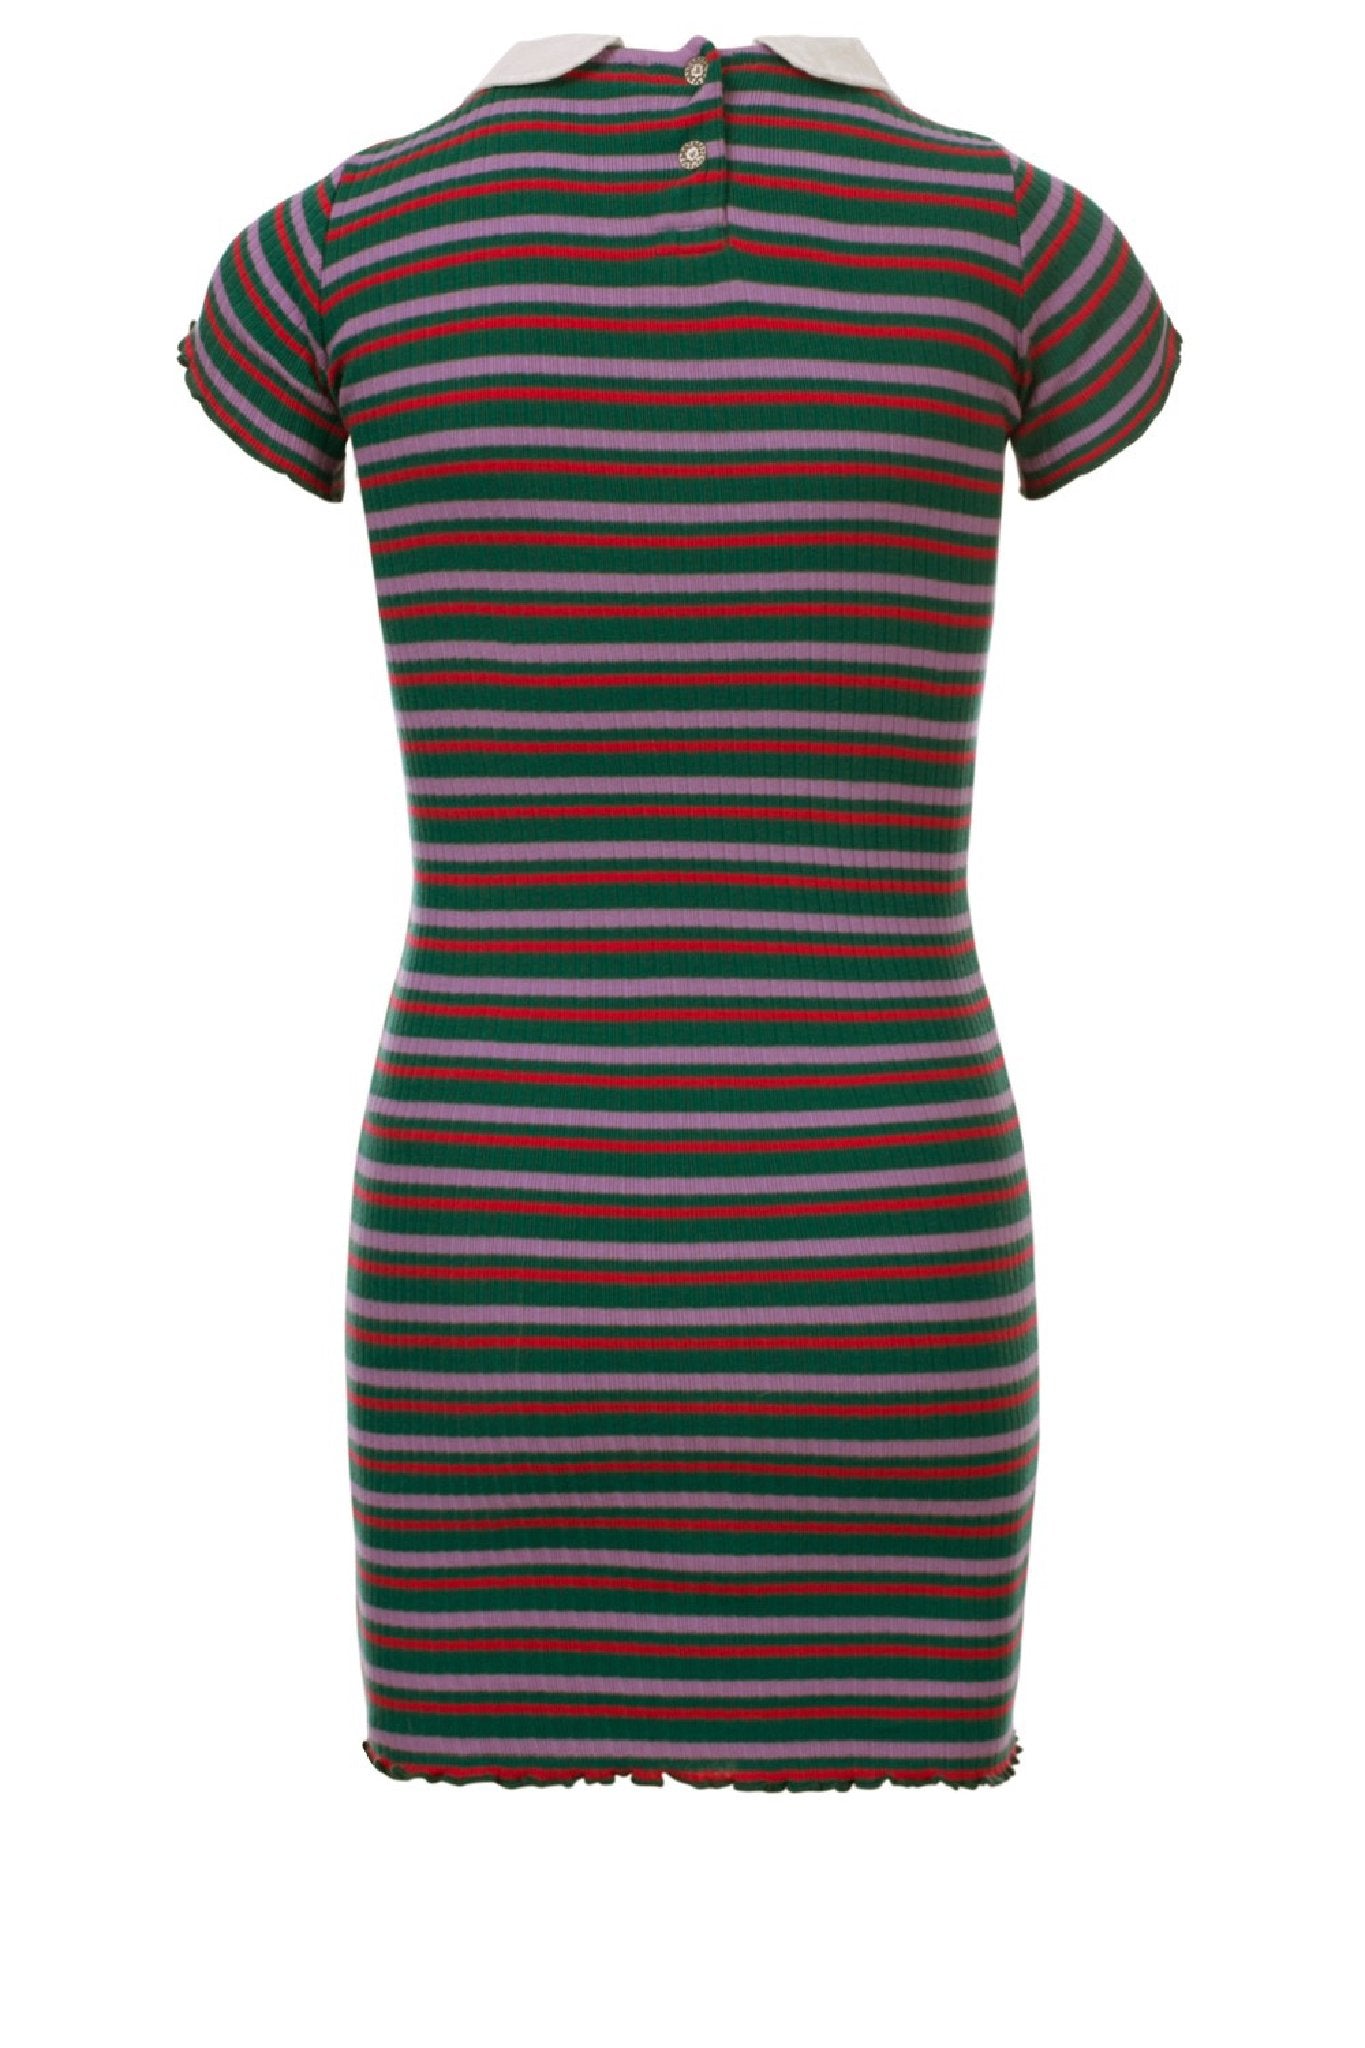 Meisjes Little rib collar dress s van LOOXS Little in de kleur Funky Ao in maat 128.